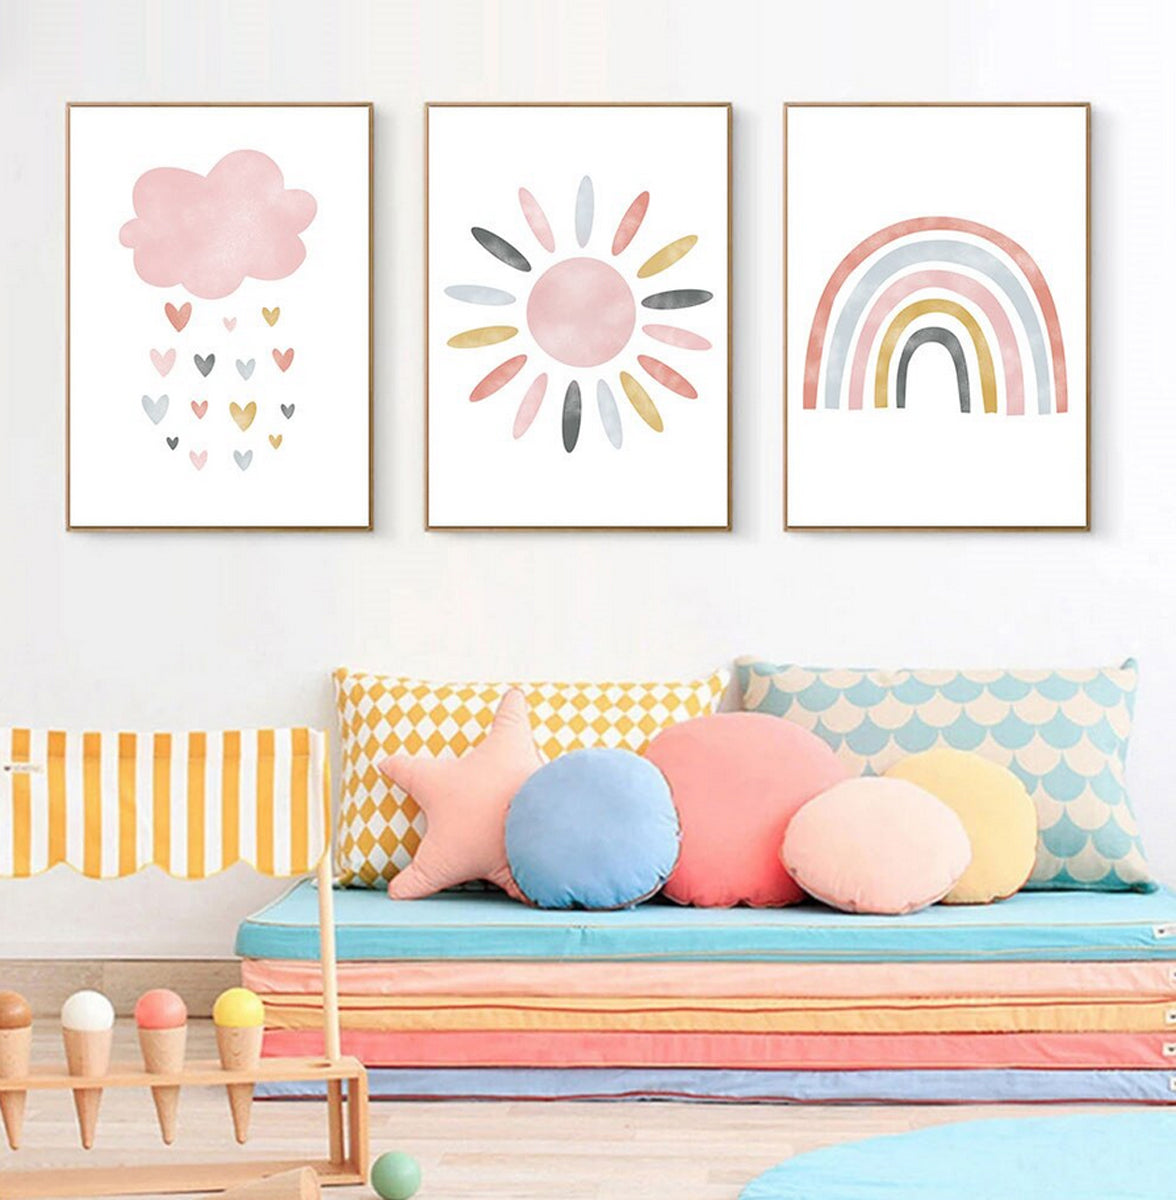 TPFLiving Poster Leinwand / Sonne, Wolken, Herzen, Regenbogen für Kinderzimmer - Auch im 3er Set / Verschiedene Größen - OHNE Rahmen - Modell k4231